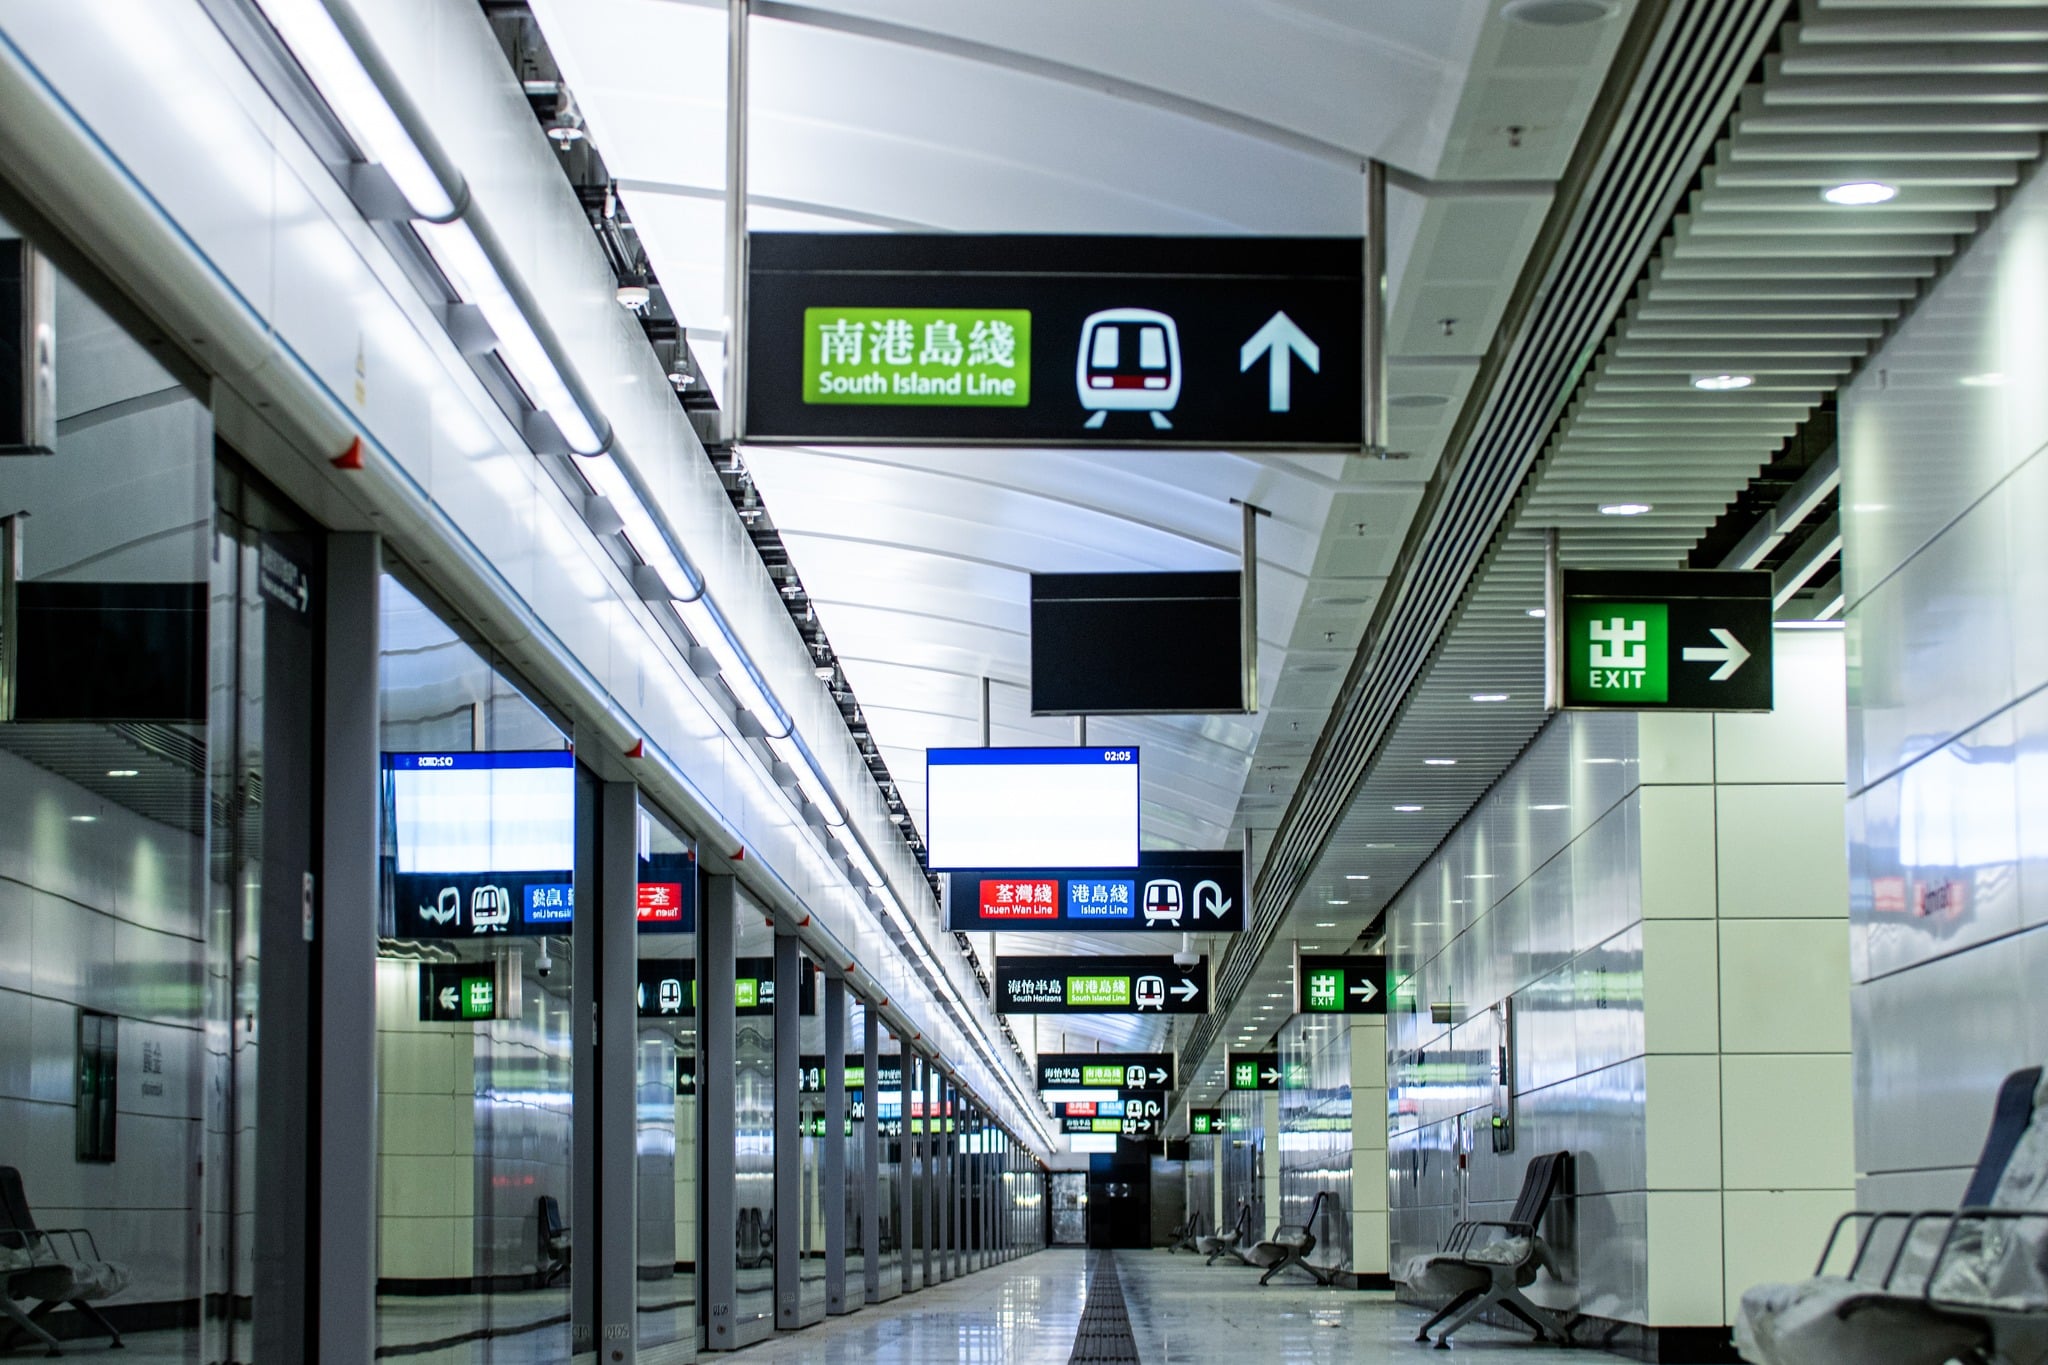 Hong Kong mtr; public transport; public transportation system